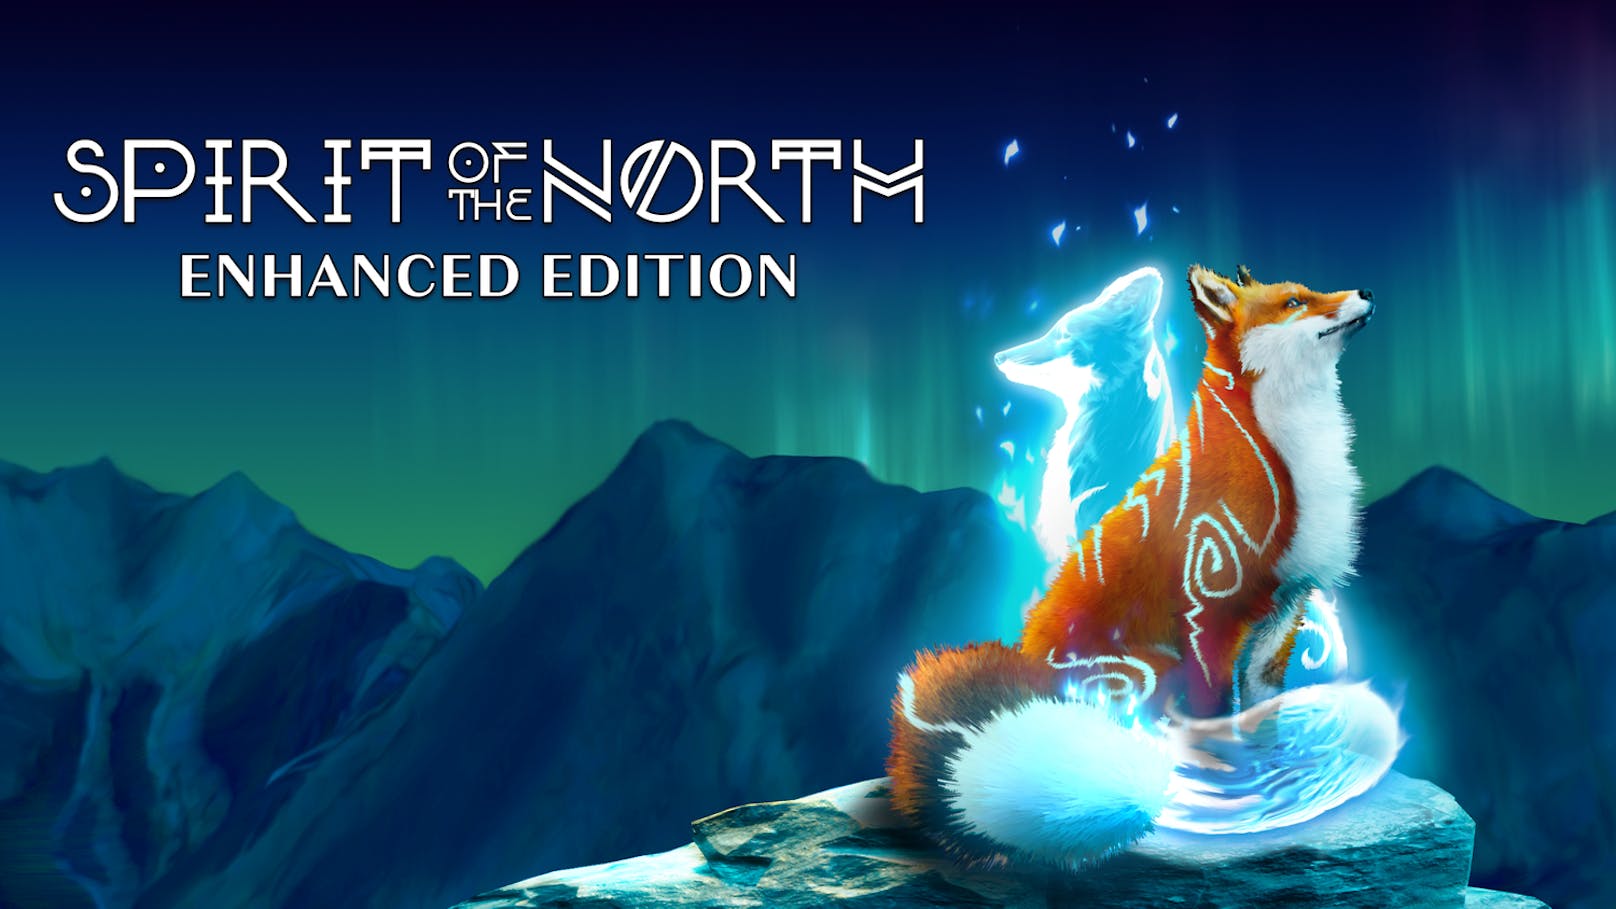 Wer sich zurücklehnen und einfach eine mystische Welt erkunden will, ohne ständig auf Gefahren und Kämpfe oder auf unzählige Sammelobjekte zu treffen, findet mit der "Spirit of the North Enhanced Edition" nun auch auf der neuen PlayStation 5 seine Erholung.